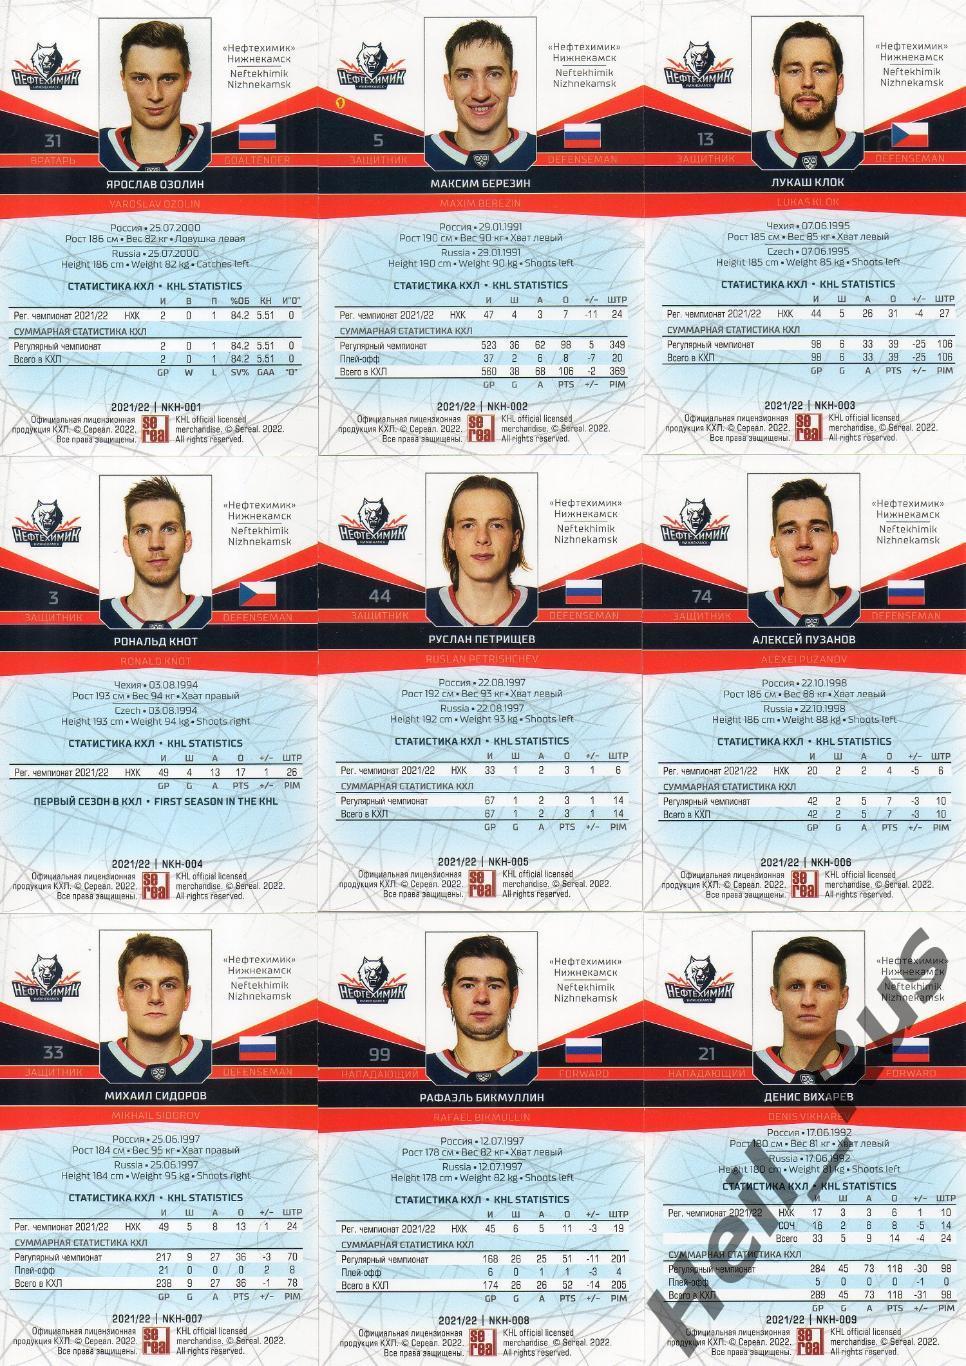 Хоккей. Нефтехимик Нижнекамск 18 карточек КХЛ сезон 2021/22 (Озолин, Порядин, +) 1